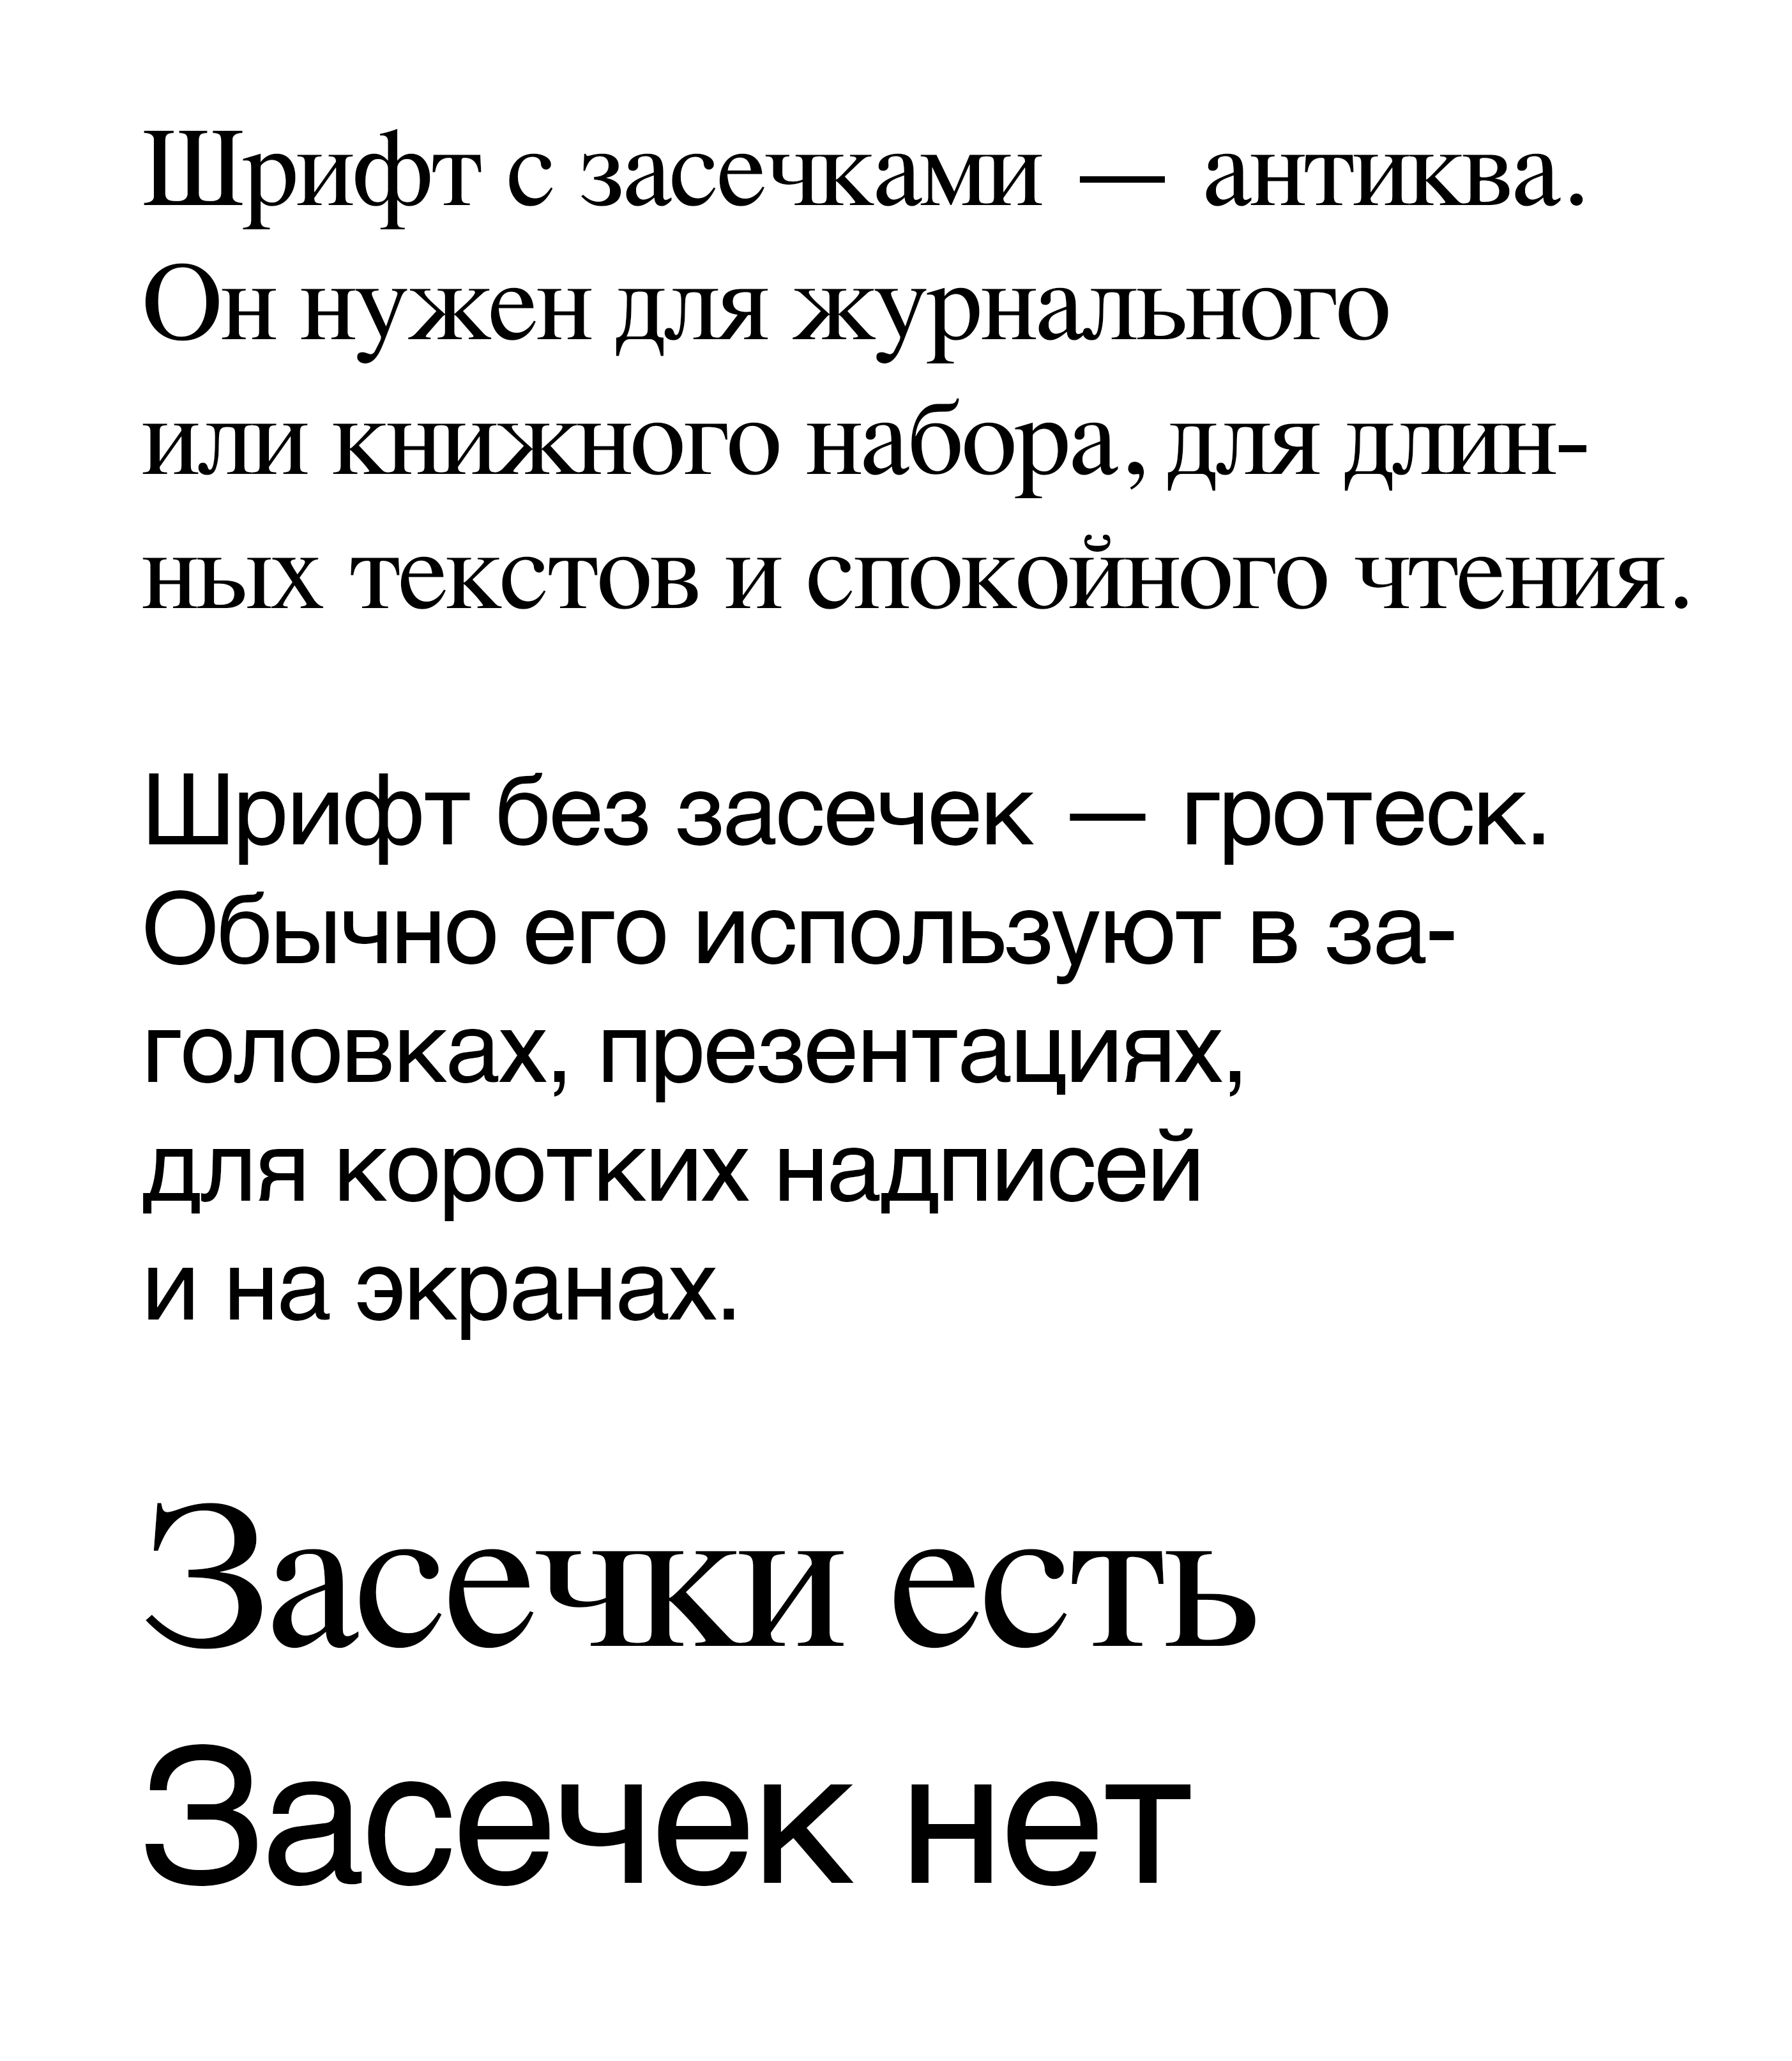 Примеры антиквы Times и гротеска Arial. Сравните буквы «с», «з», «т», «к» и «ч»